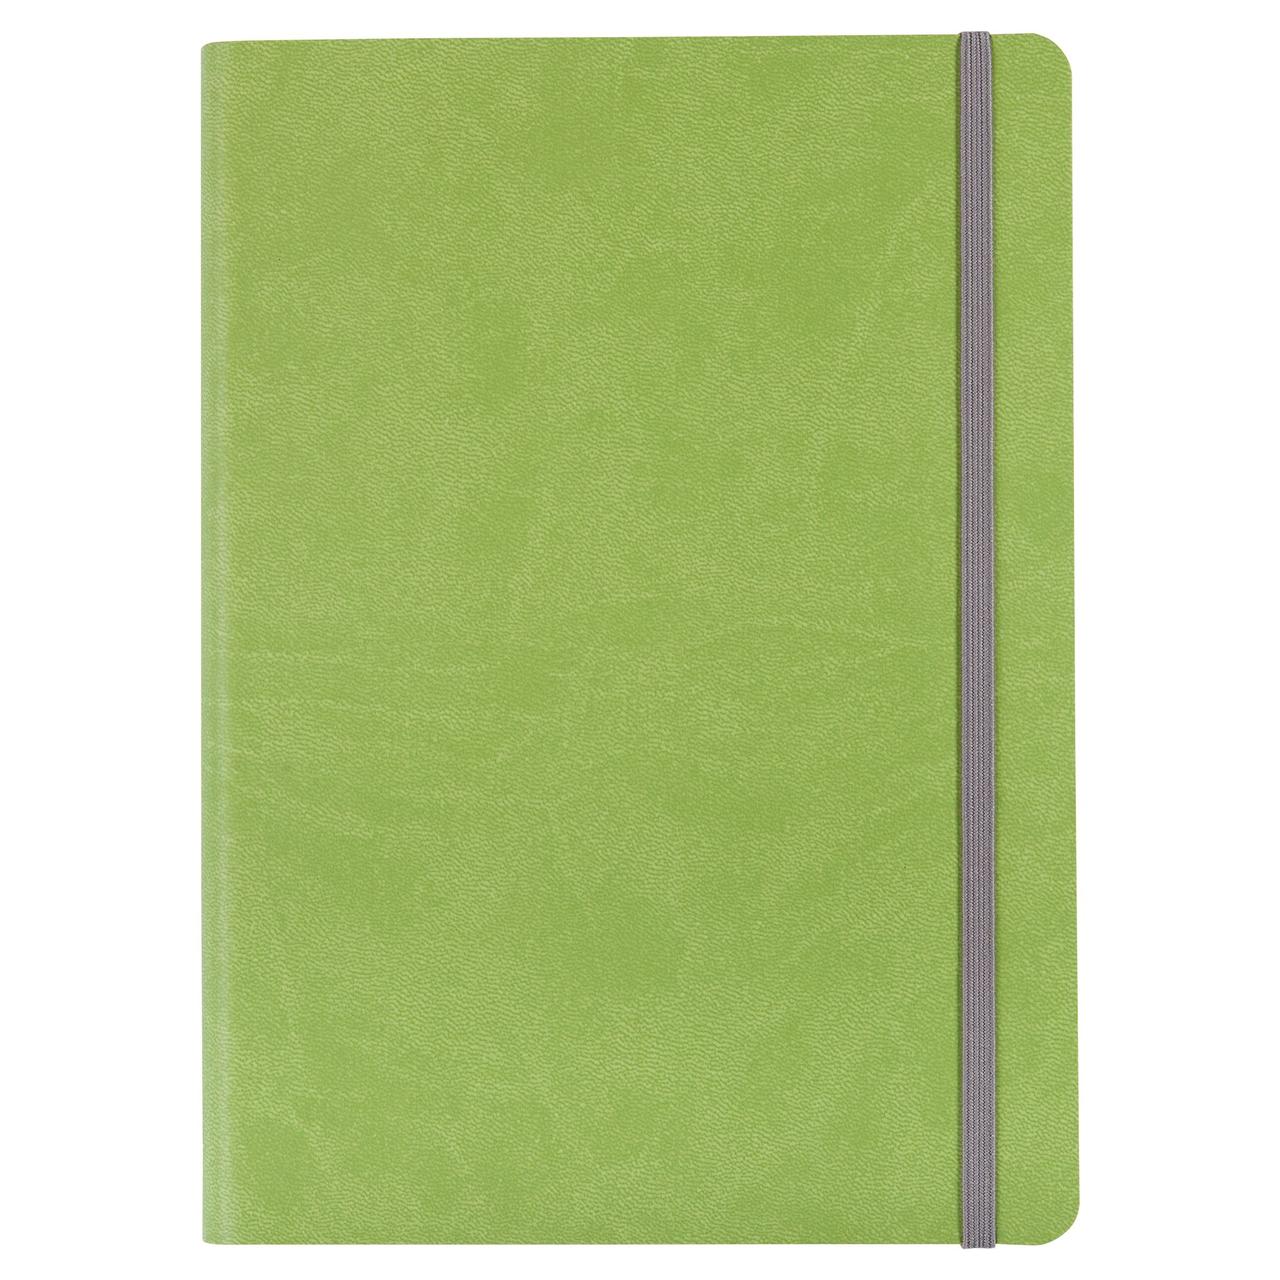 Ежедневник Vivien, недатированный, зеленый (артикул 6653.91), фото 1